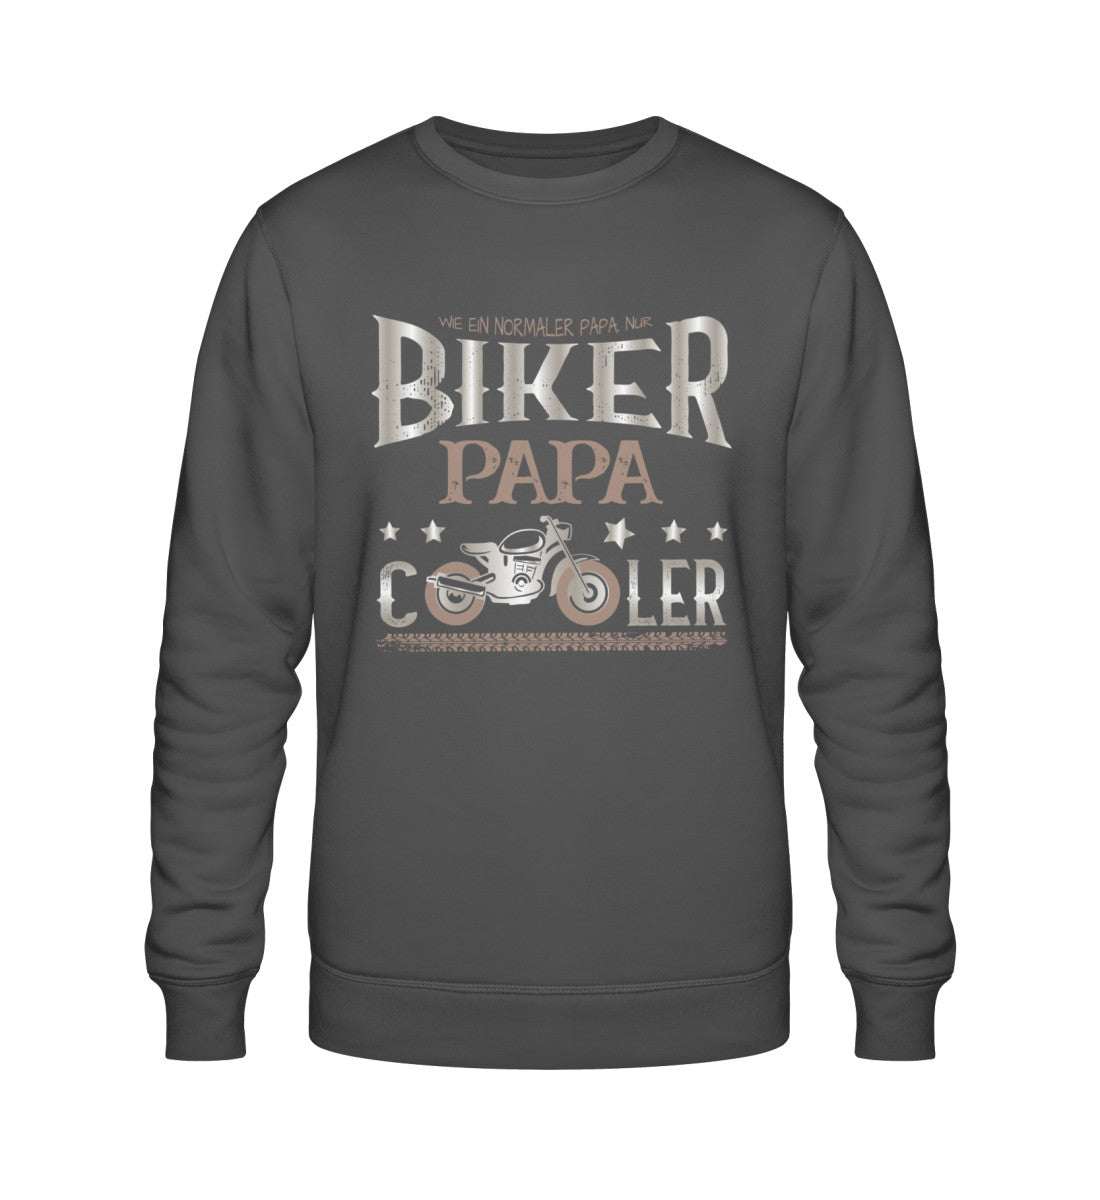 Ein Biker Sweatshirt für Motorradfahrer von Wingbikers mit dem Aufdruck, Biker Papa - Wie ein normaler Papa nur cooler - in dunkelgrau.